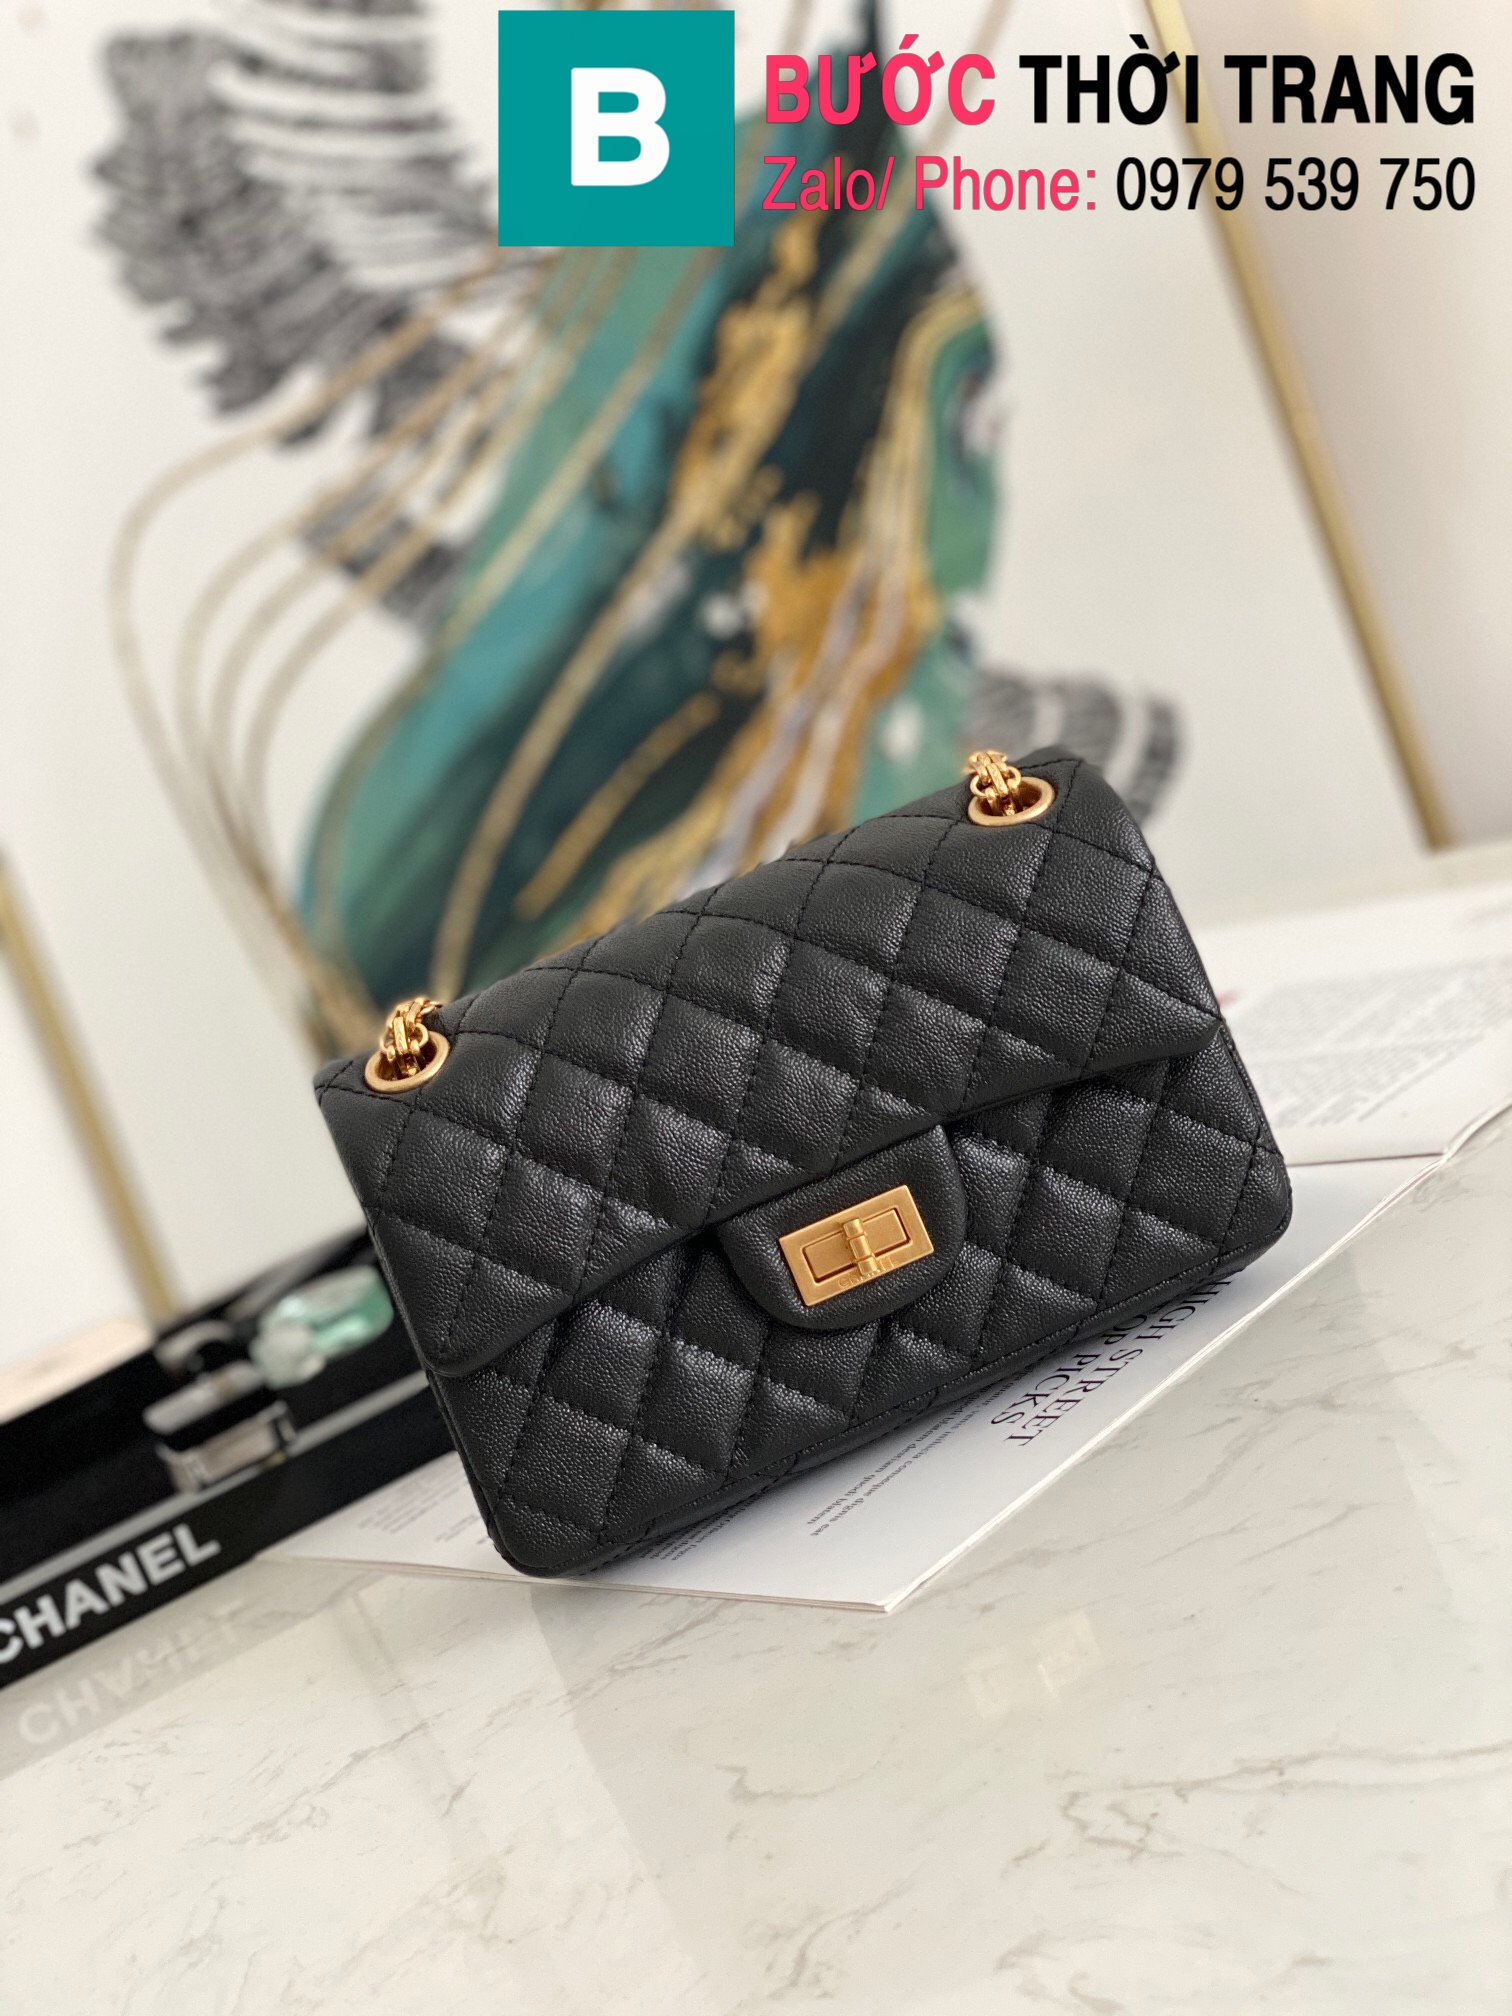 Túi xách Chanel Mini  Handbag siêu cấp da bê màu đen size 20cm – AS0874  – Túi xách cao cấp, những mẫu túi siêu cấp, like authentic cực đẹp